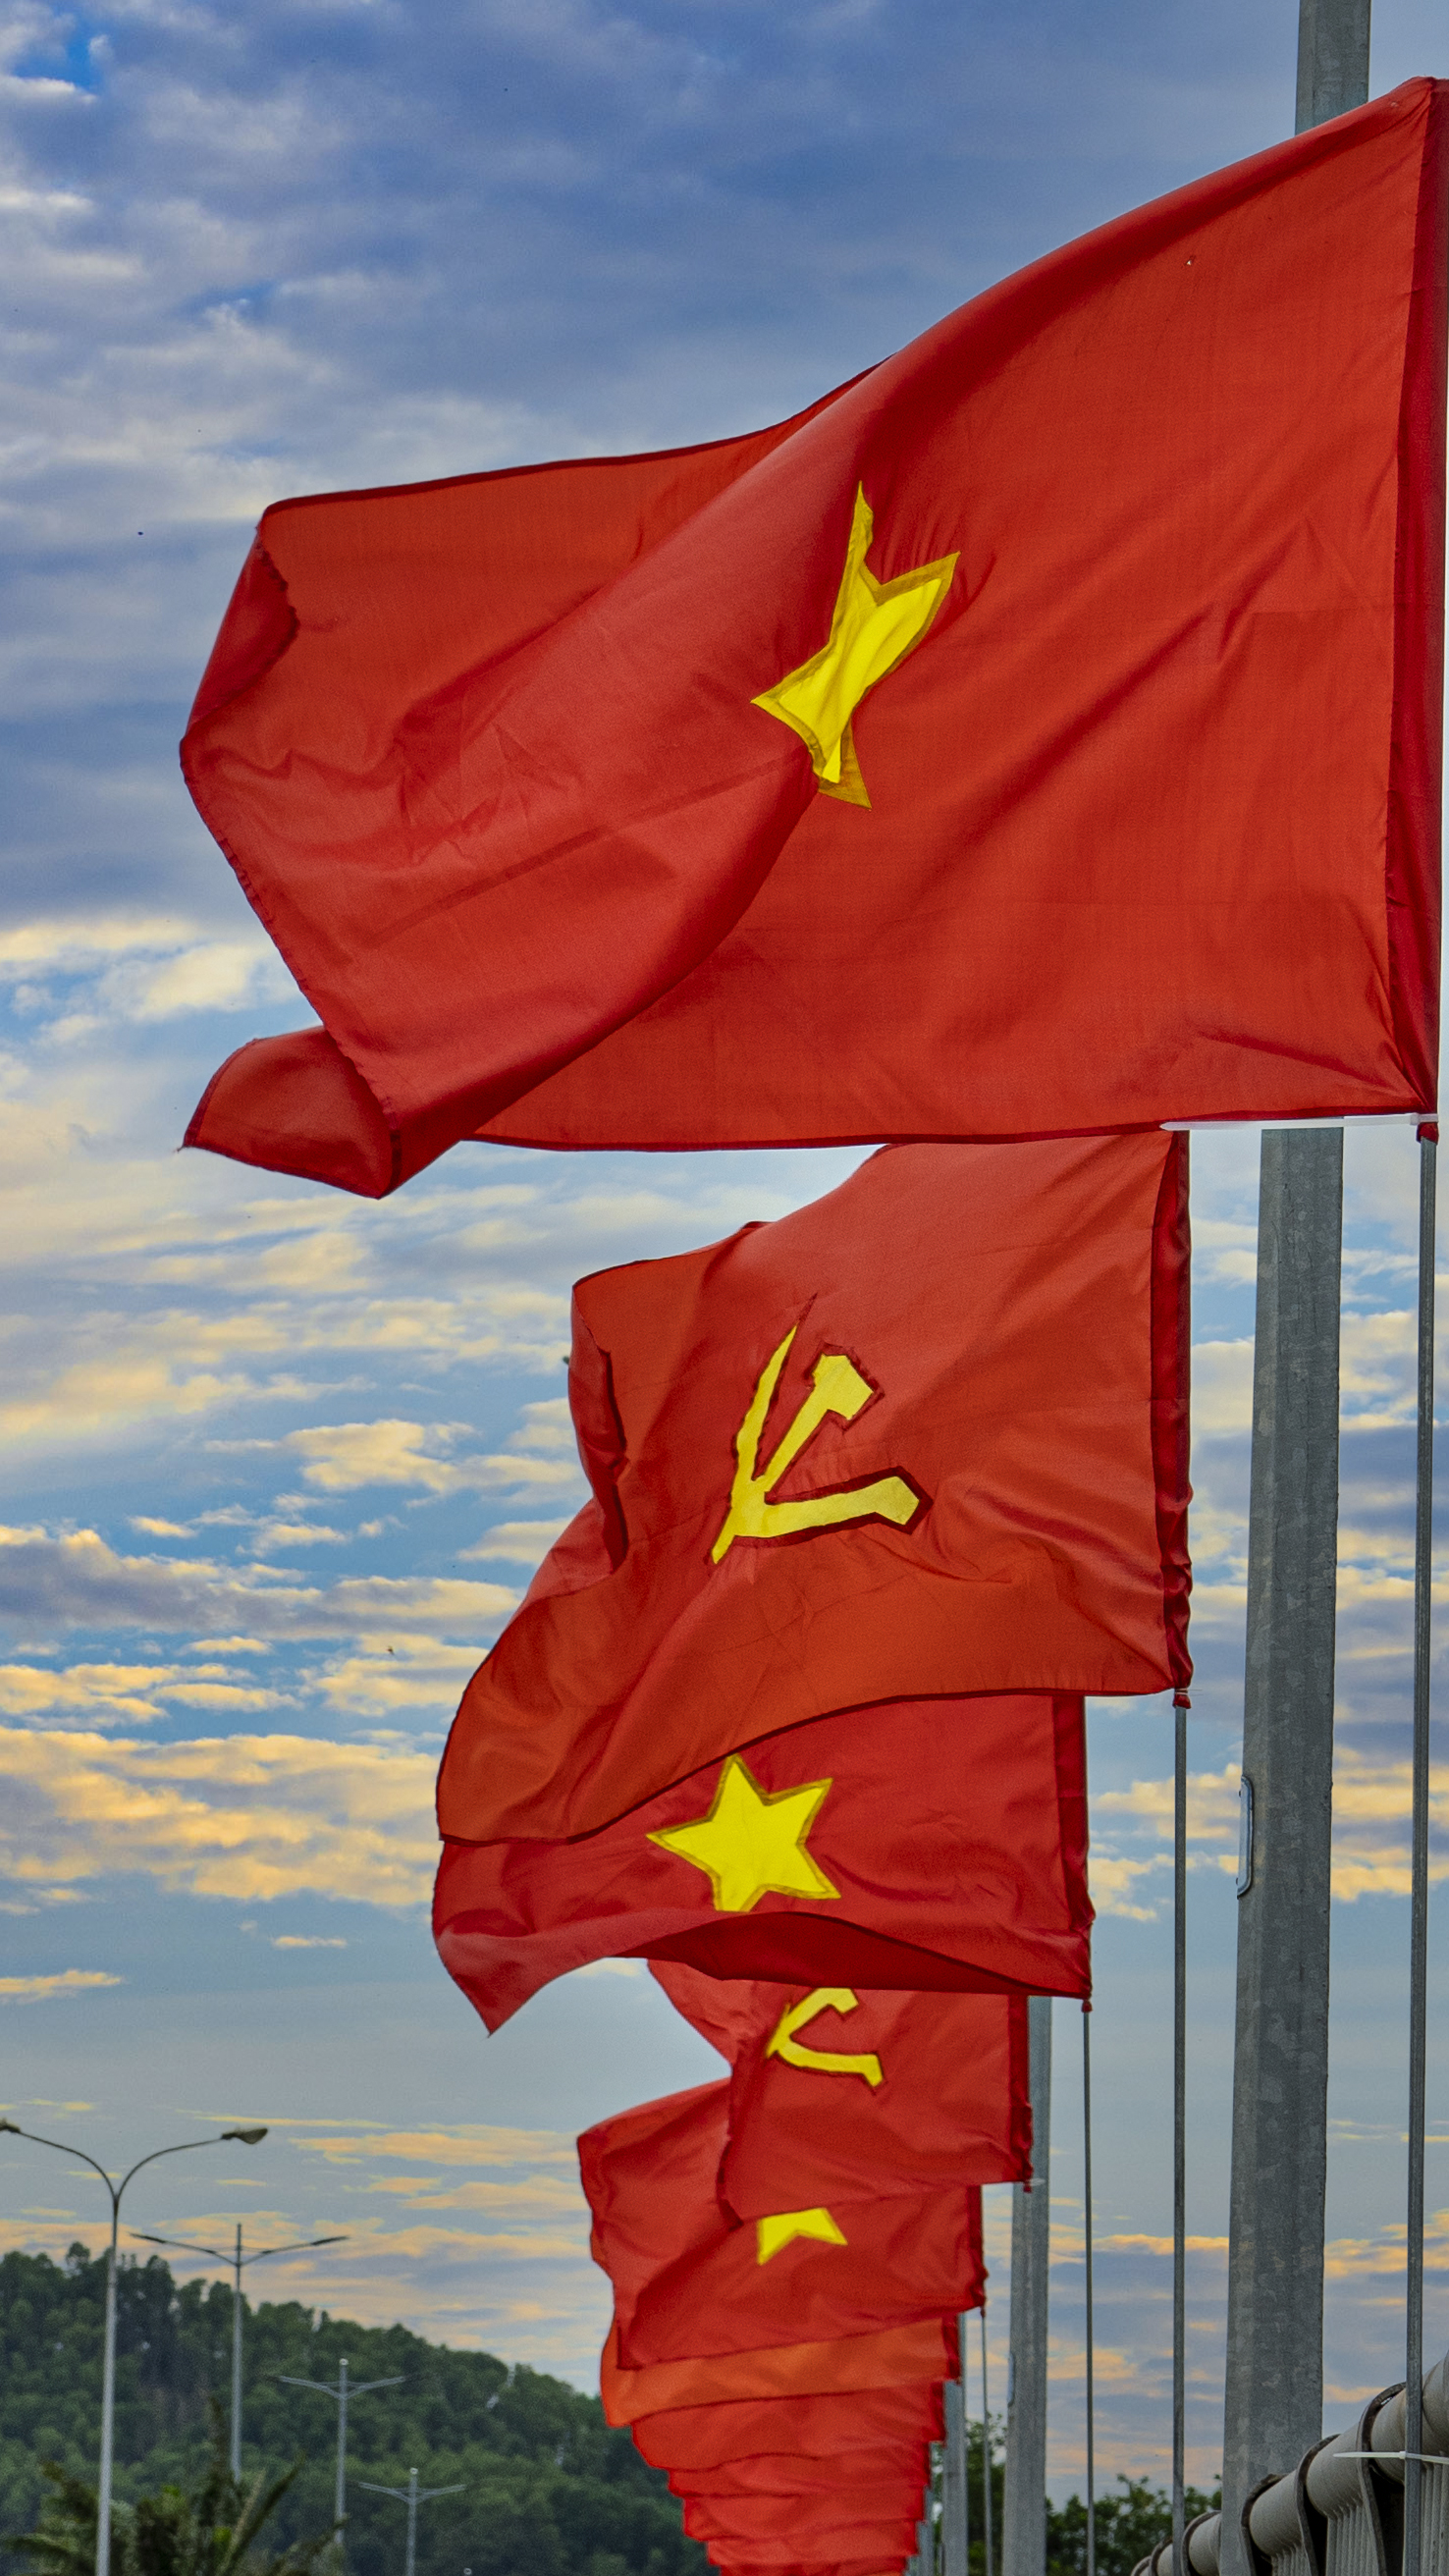 Thiêng liêng cờ tổ quốc: Với vai trò là biểu tượng của đất nước, cờ tổ quốc đã trở thành vật phẩm linh thiêng của mỗi người dân Việt Nam. Nó là niềm tự hào và lòng gắn bó với dân tộc, đại diện cho sự nghiêng mình trước văn hoá truyền thống của đất nước. Hãy nhấp vào hình ảnh để chiêm ngưỡng vẻ đẹp thiêng liêng của cờ tổ quốc.